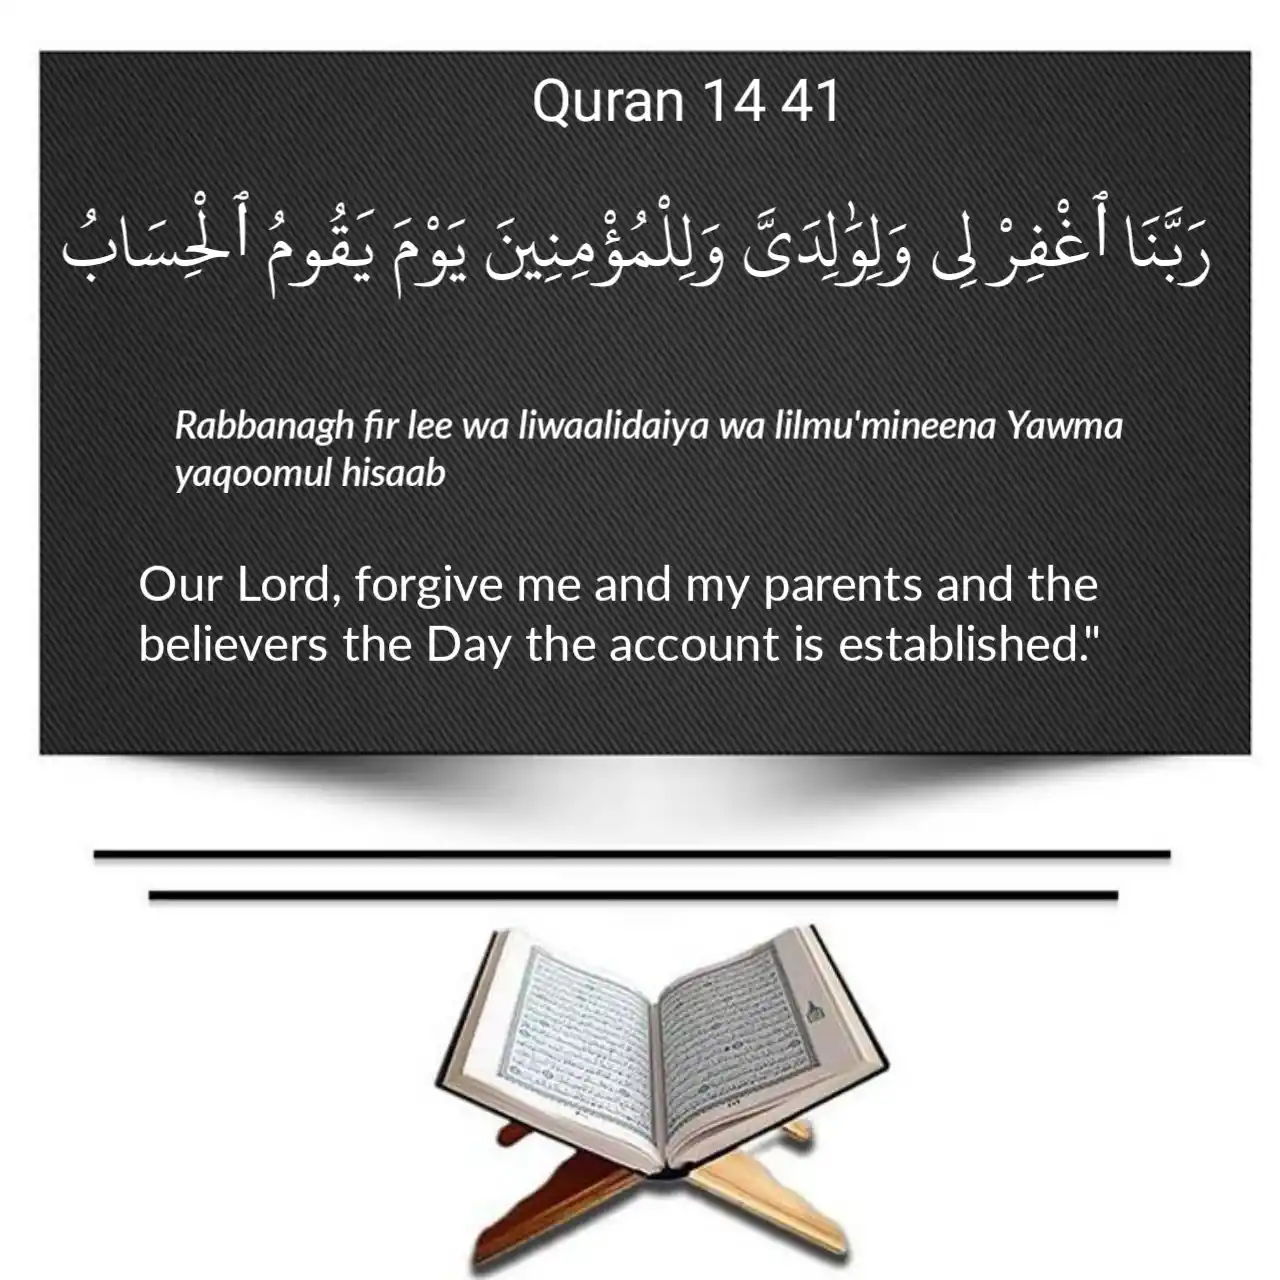 Quran 14 41 Transliteration